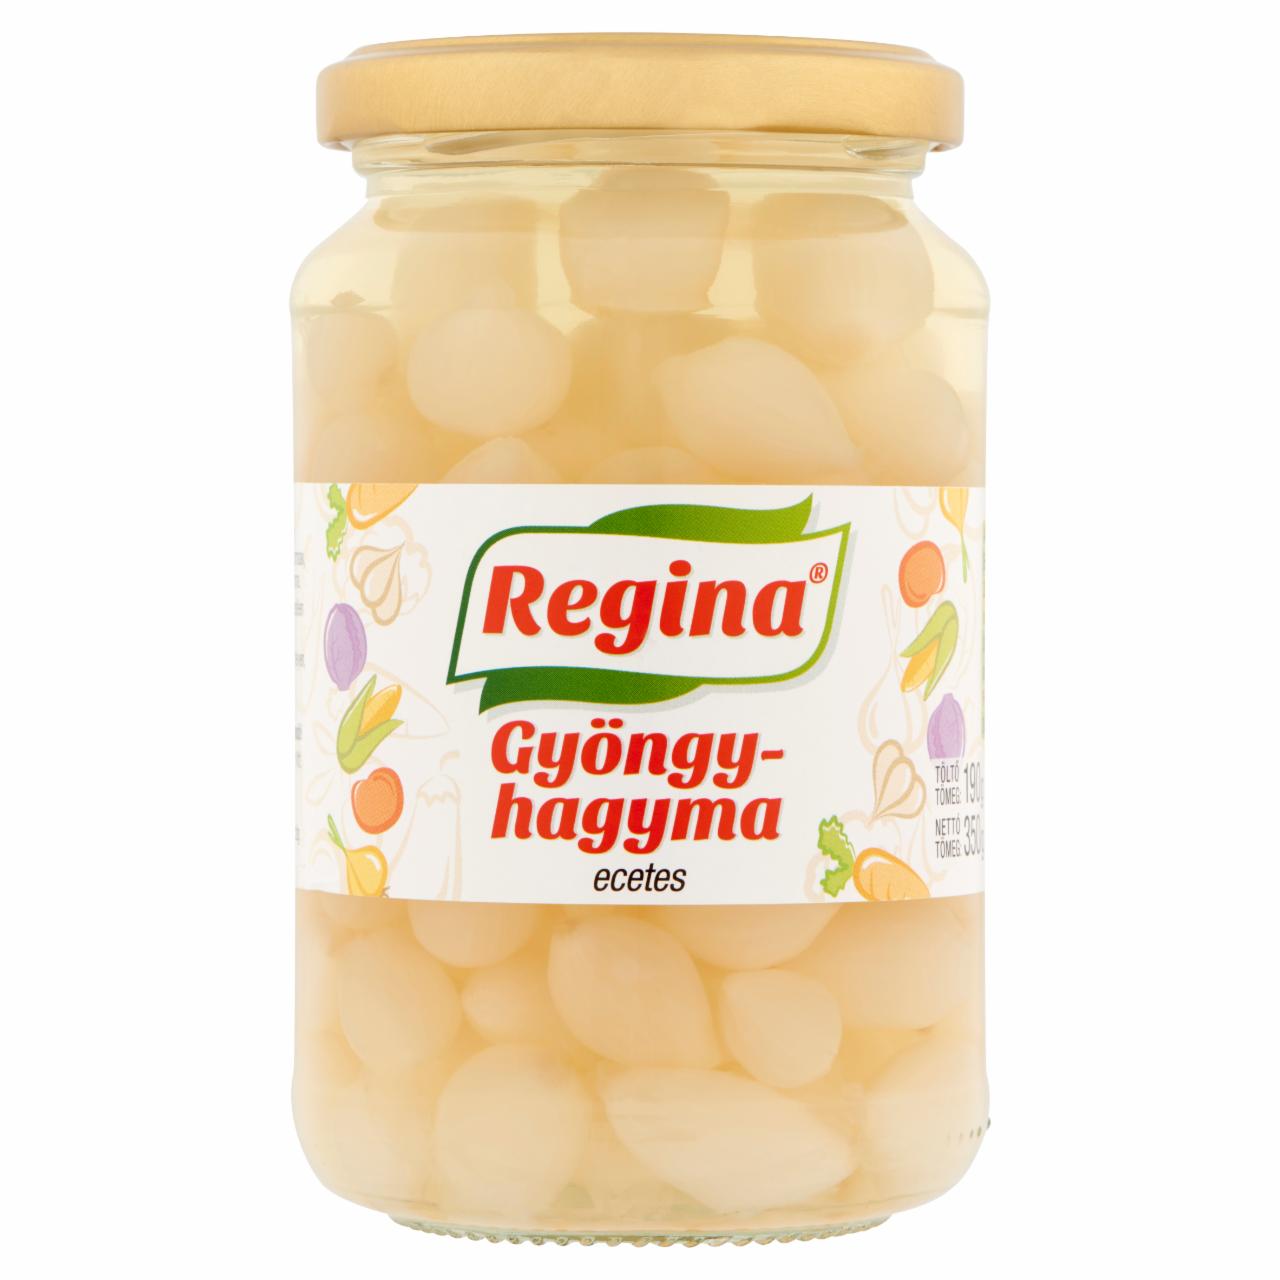 Képek - Regina ecetes gyöngyhagyma 350 g